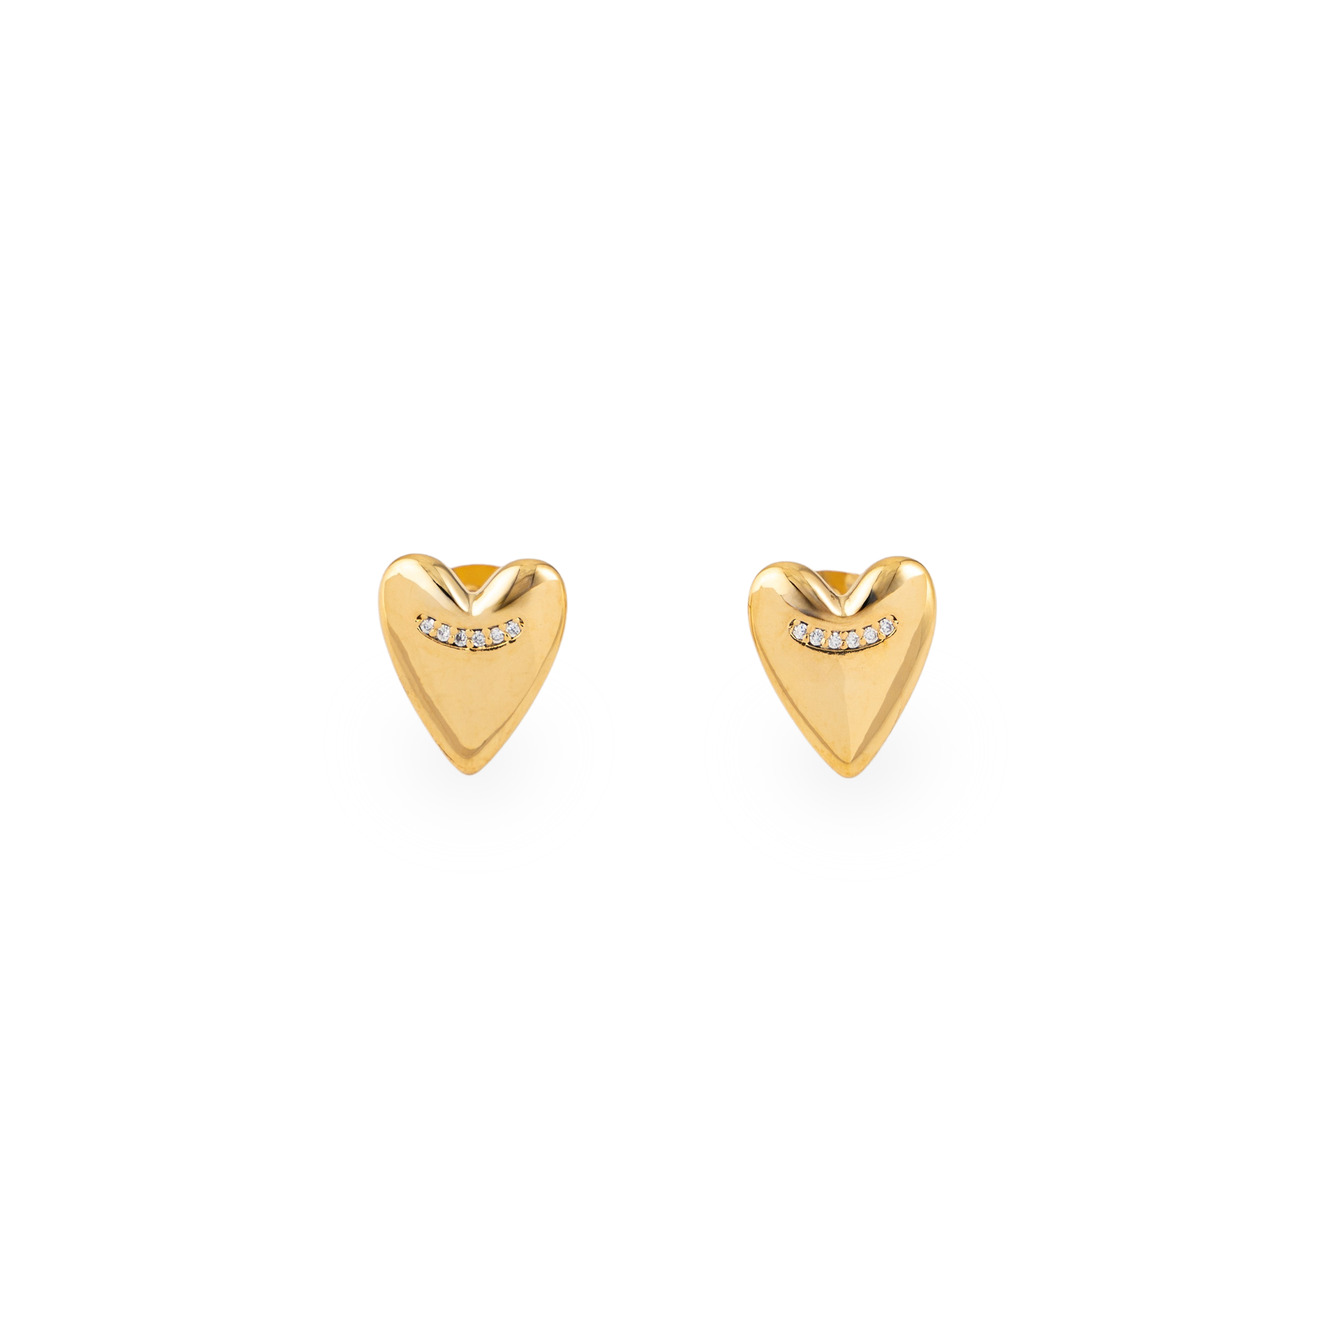 Free Form Jewelry Золотистые серьги-сердца с маленькими кристаллами free form jewelry золотистое кольцо печатка в форме сердца с кристаллами